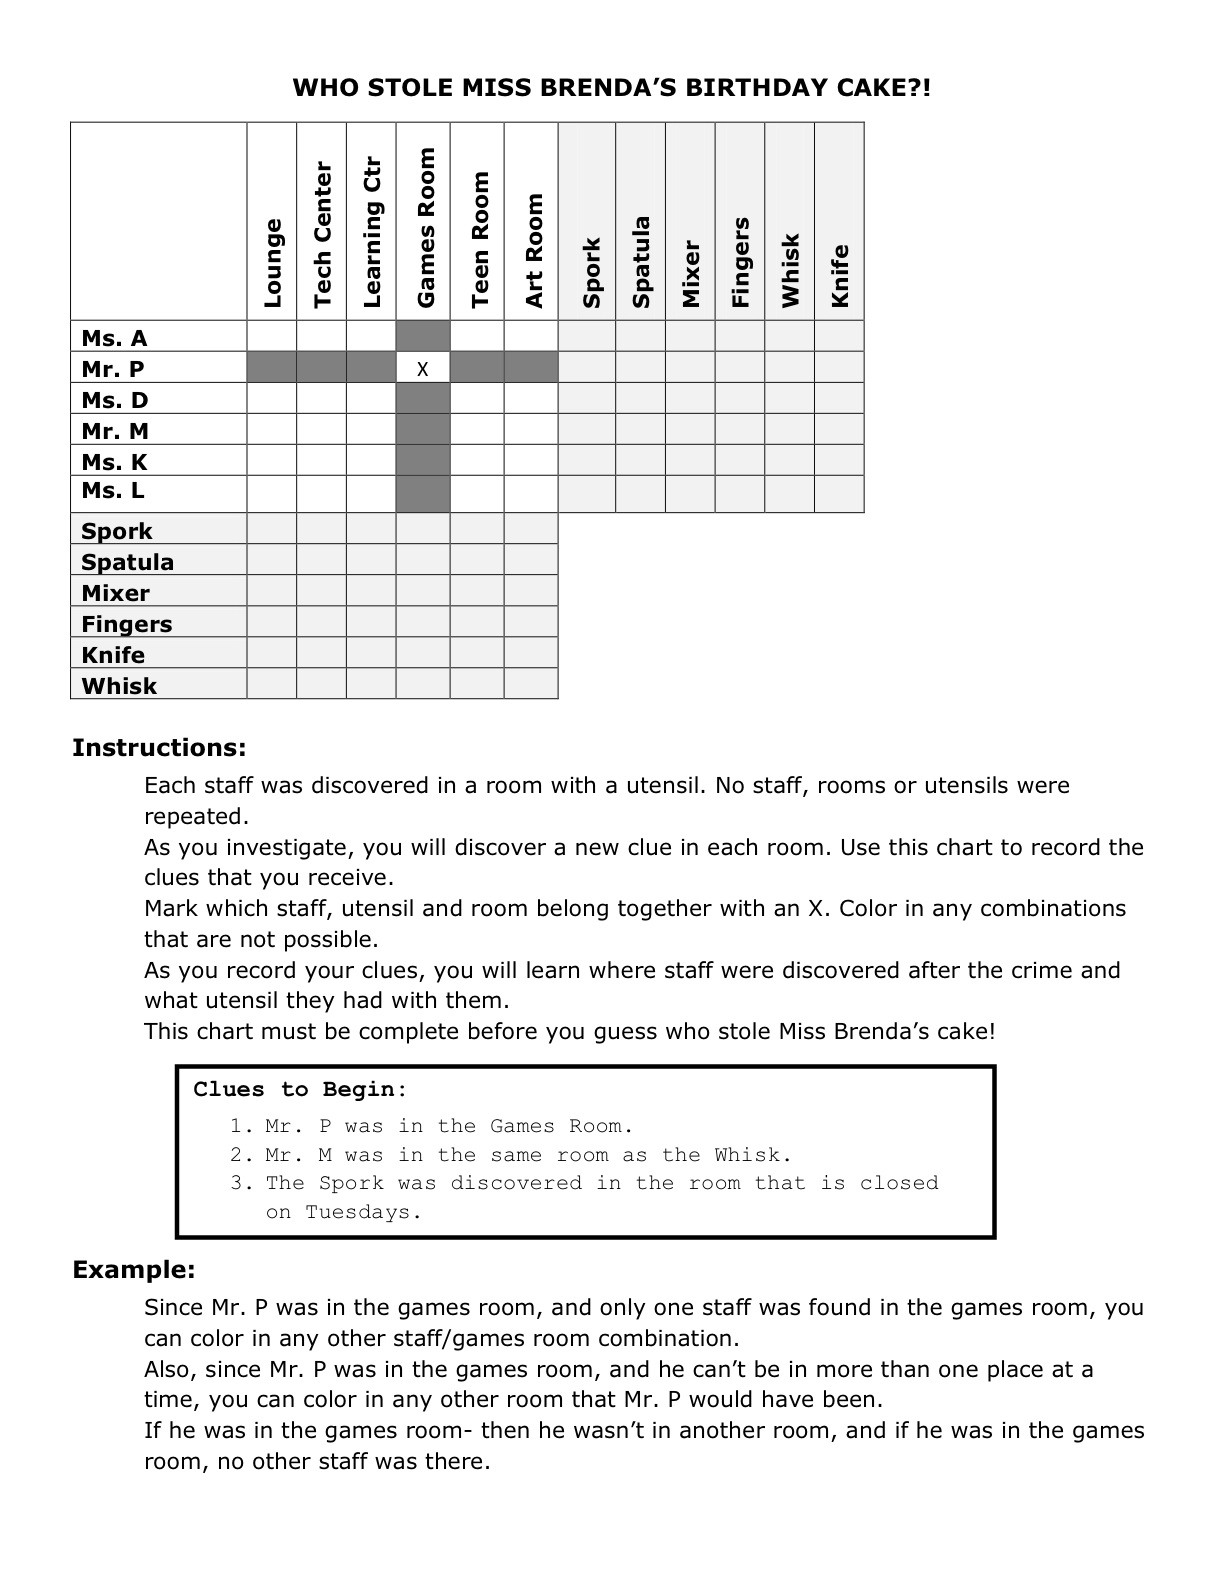 15-best-images-of-logic-worksheets-for-high-school-logic-problem-worksheets-math-logic